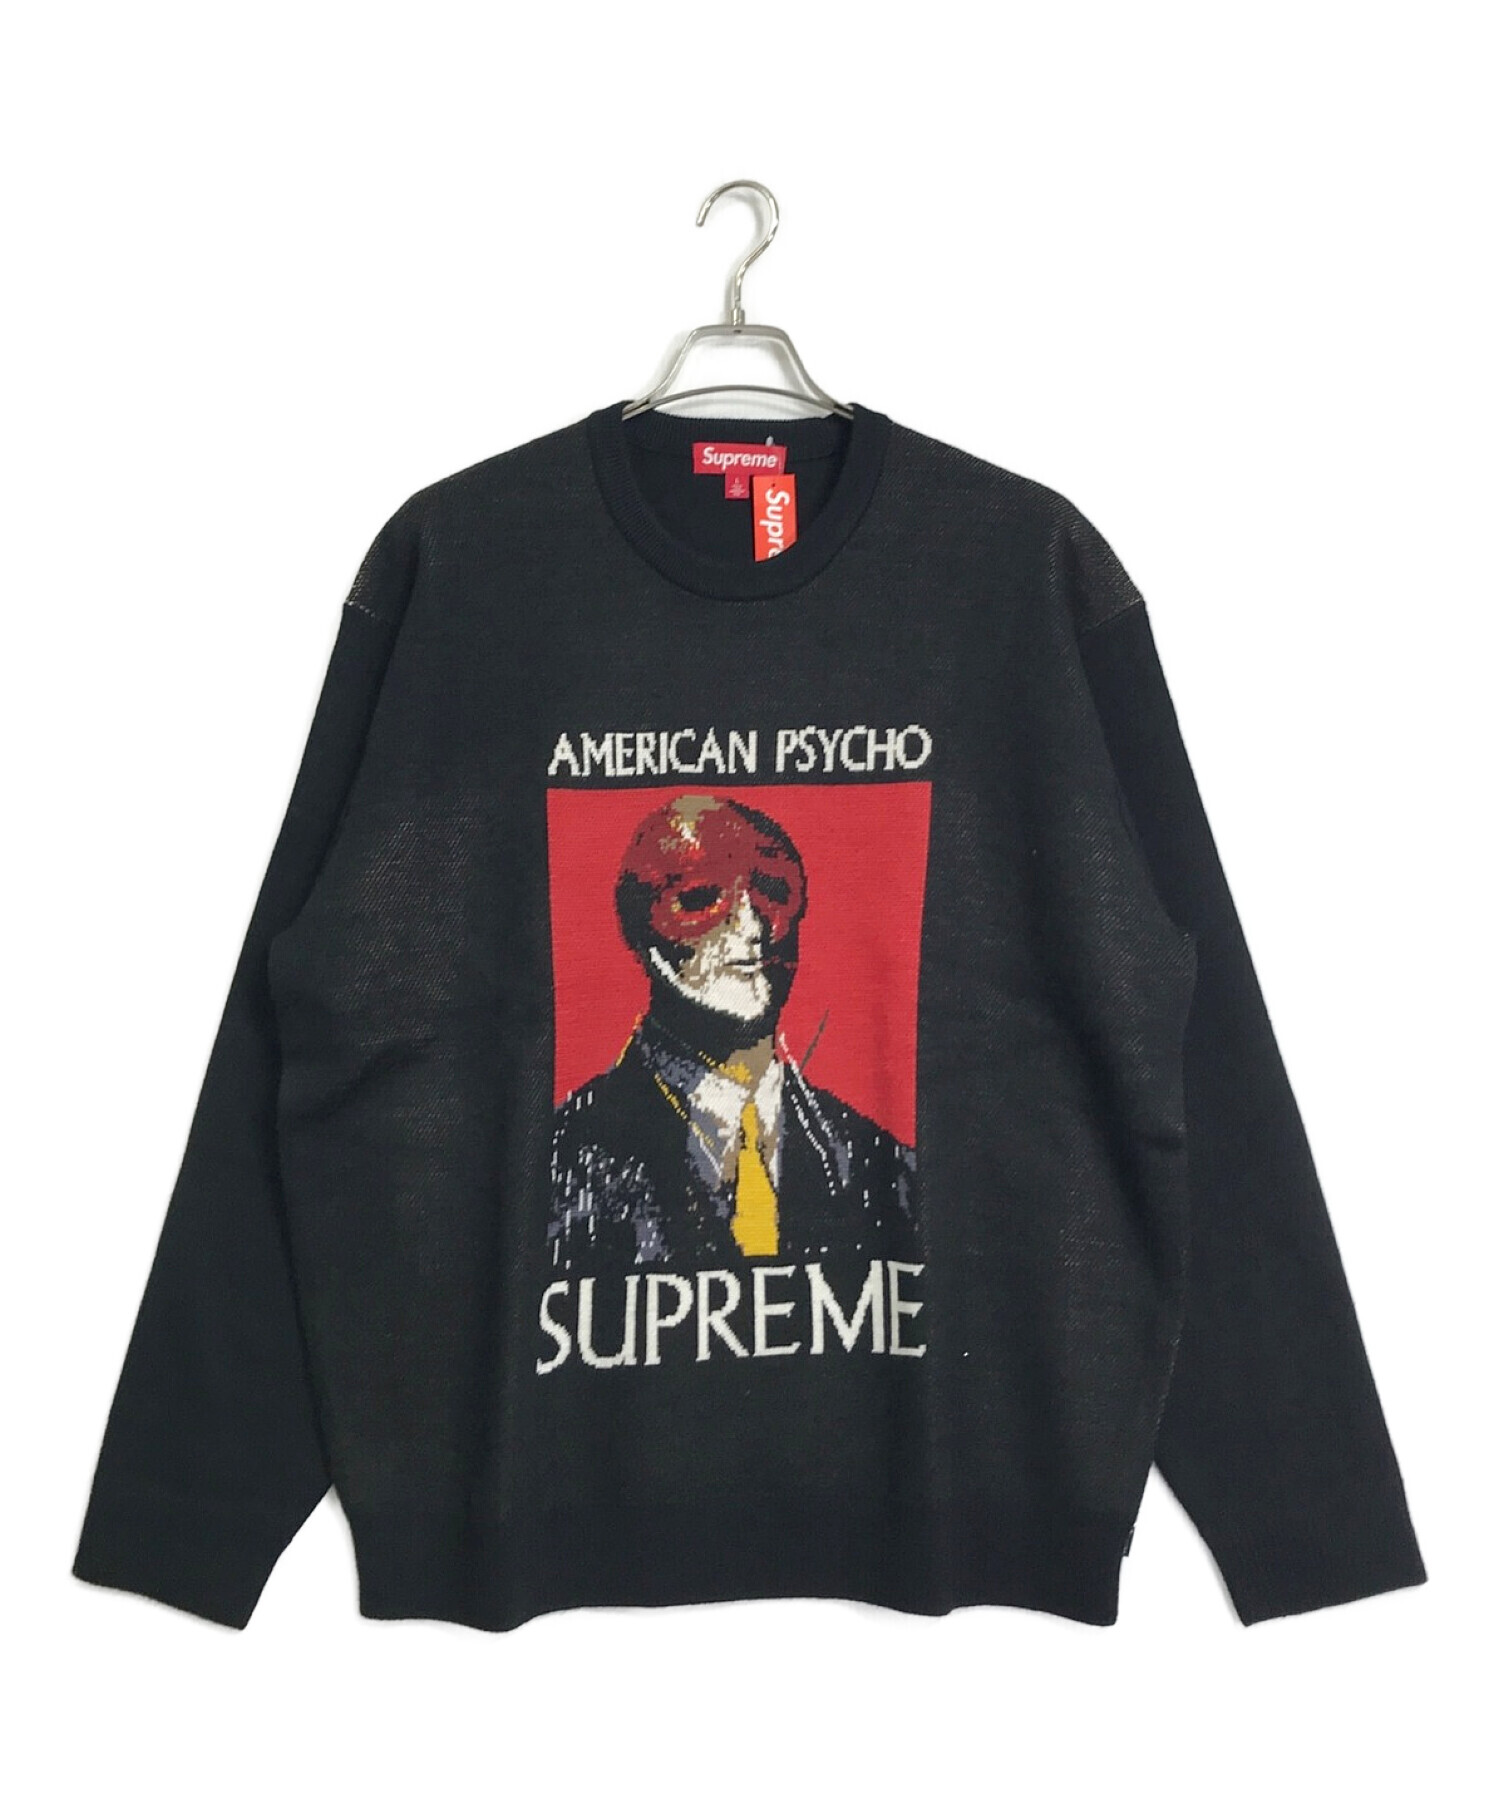 SUPREME (シュプリーム) 23AW American Psycho Sweater / アメリカンサイコセーター ブラック サイズ:L 未使用品